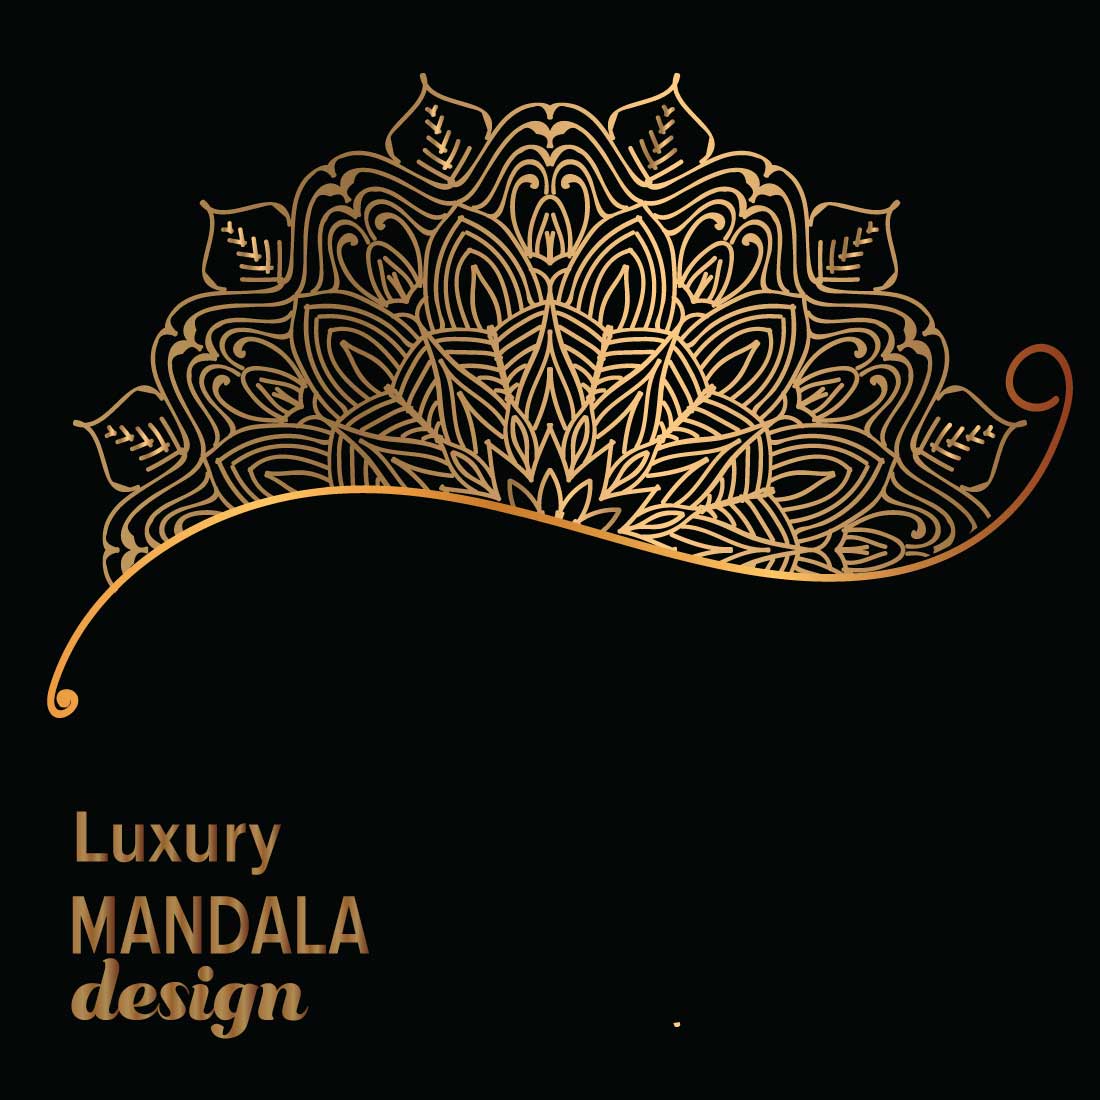 Luxury mandala design cover image.